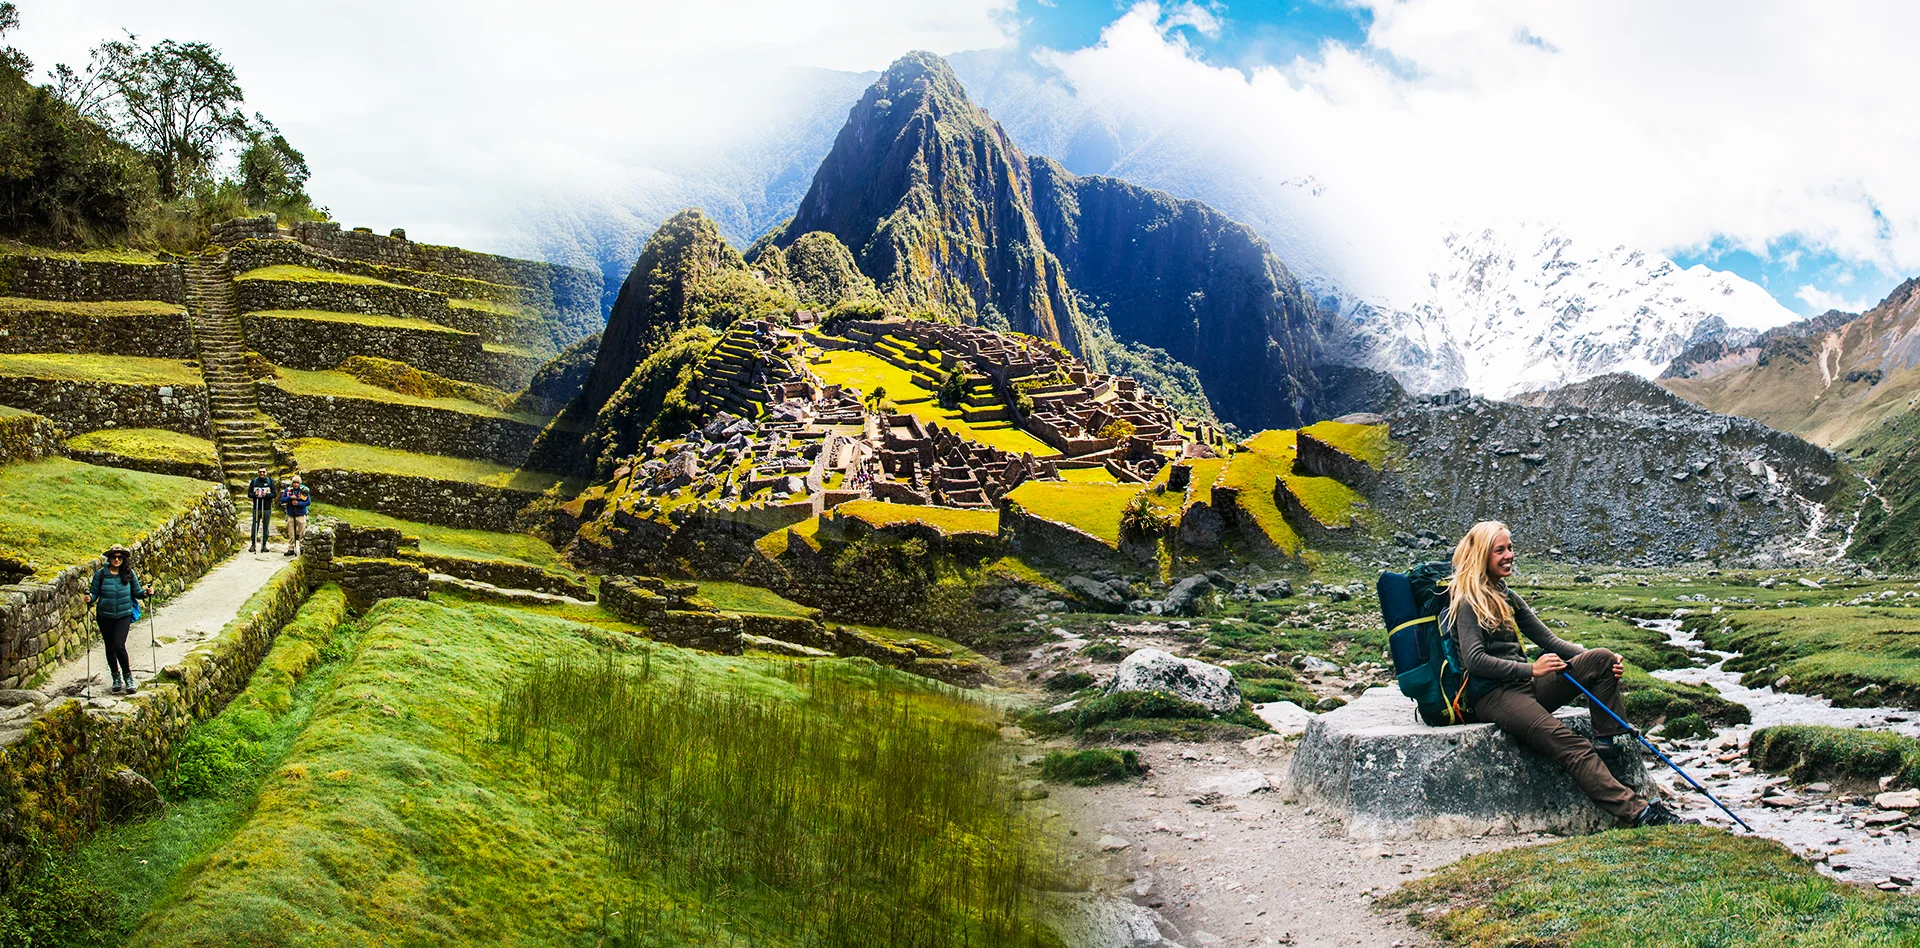 Inca Trail vs Salkantay trek